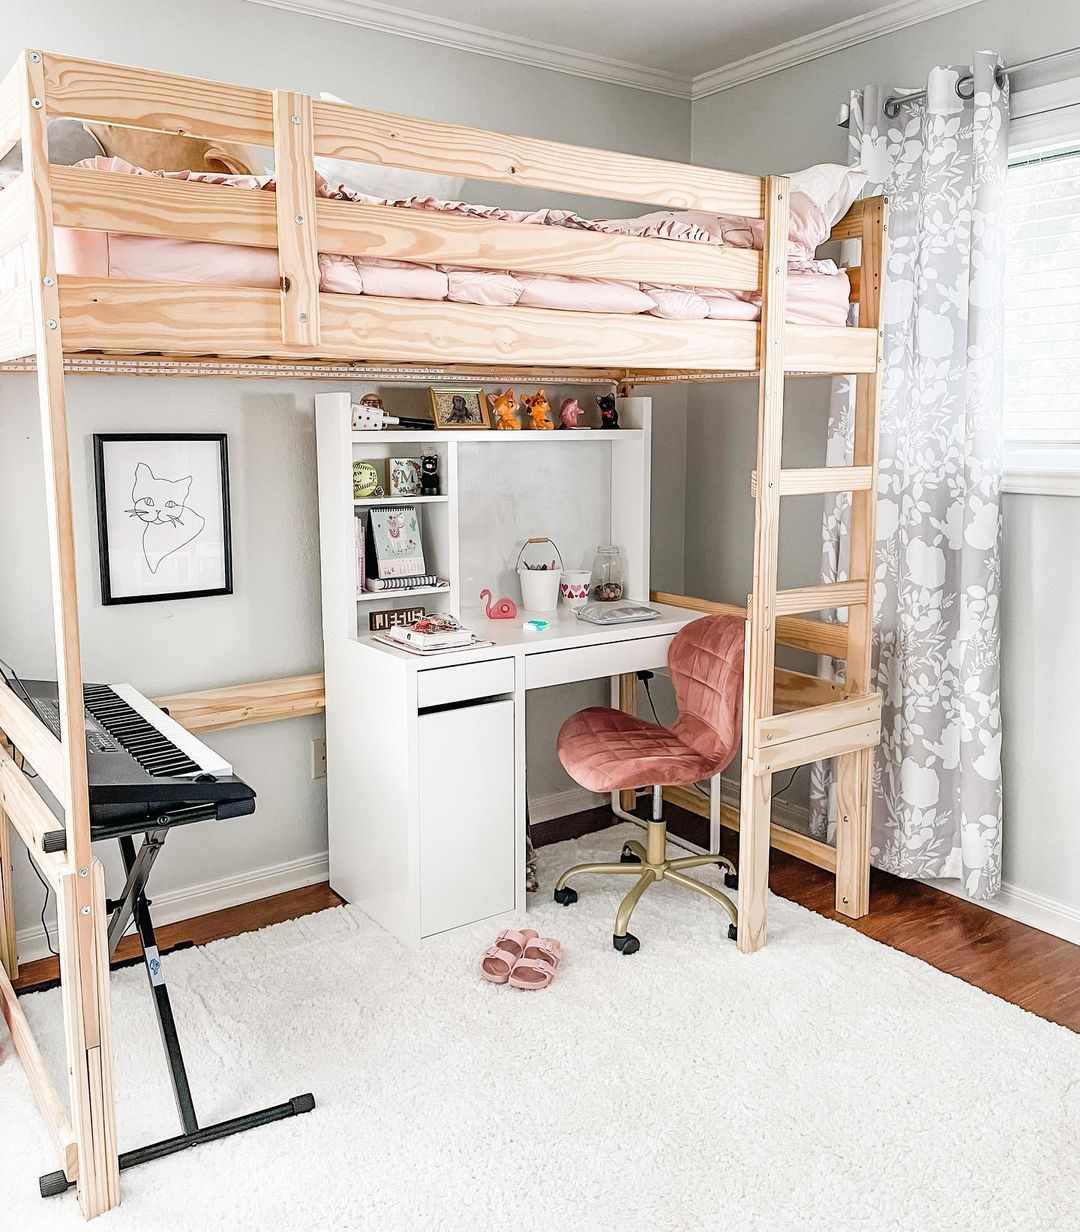 Una cama tipo loft en la habitación de un niño con escritorio, silla y teclado en la parte inferior y cama en la superior.